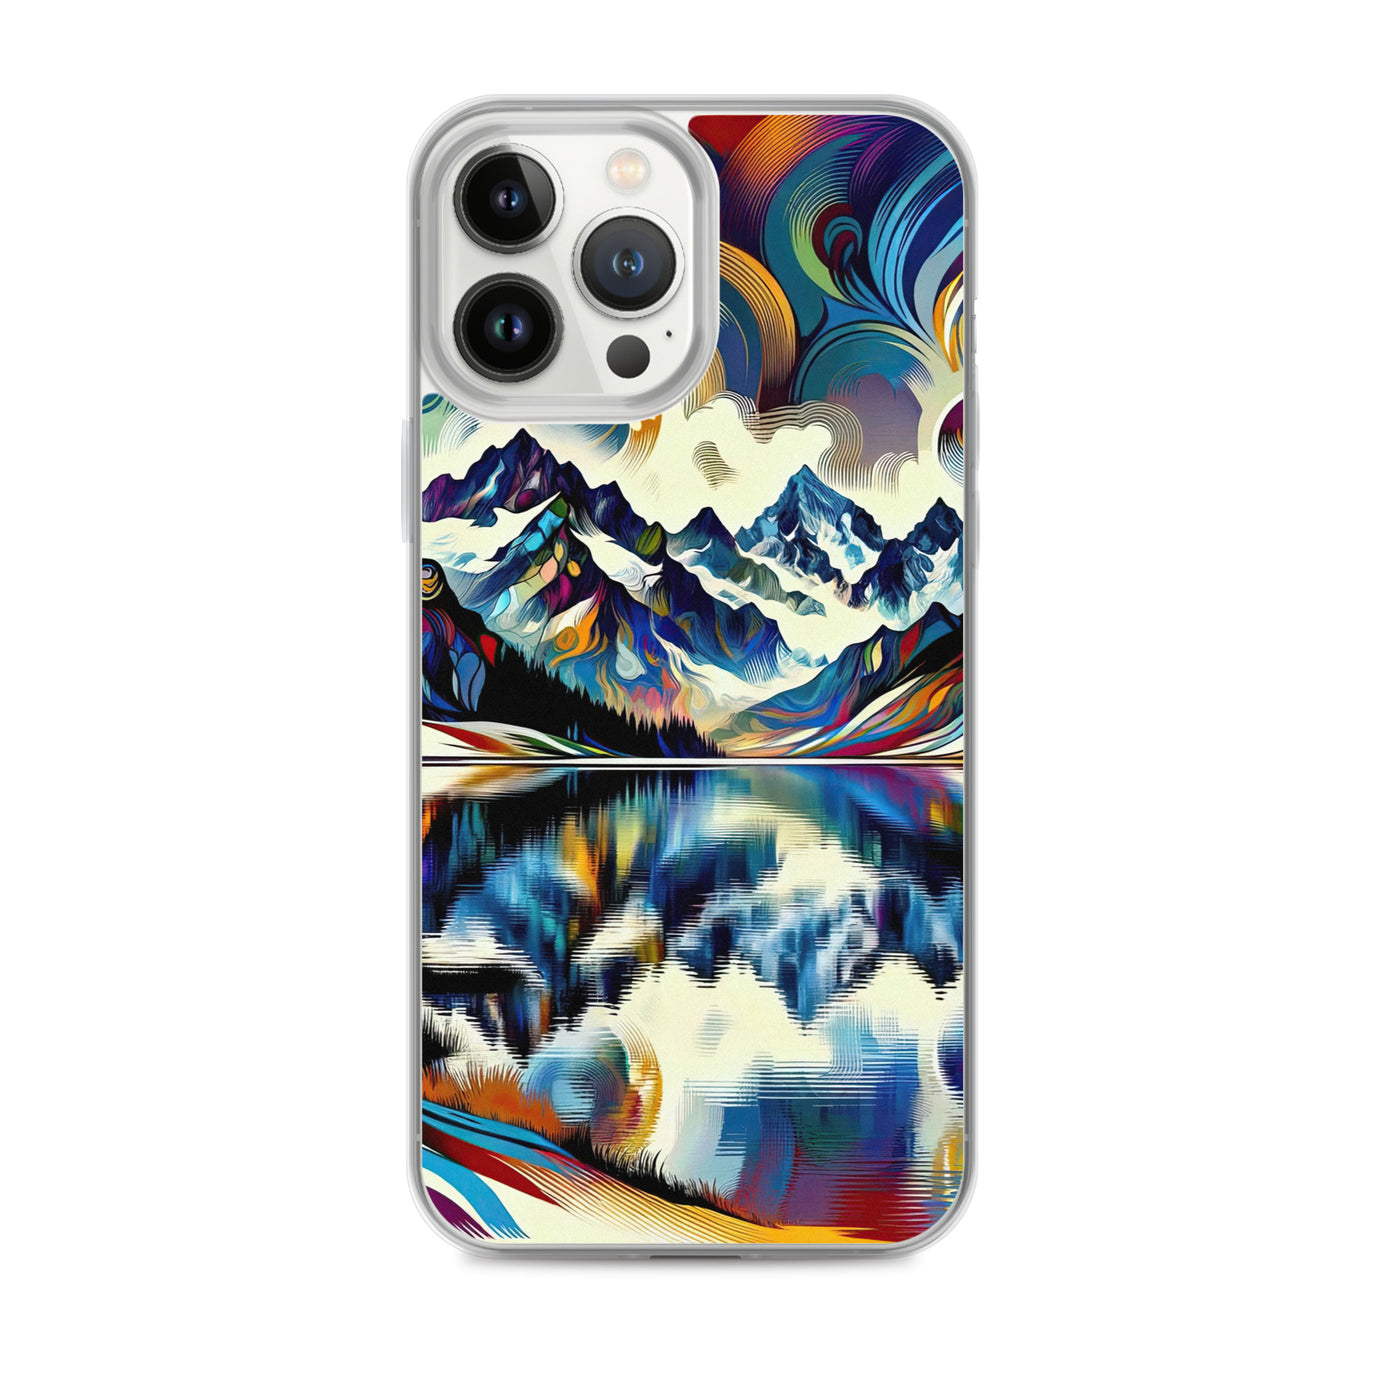 Alpensee im Zentrum eines abstrakt-expressionistischen Alpen-Kunstwerks - iPhone Schutzhülle (durchsichtig) berge xxx yyy zzz iPhone 13 Pro Max